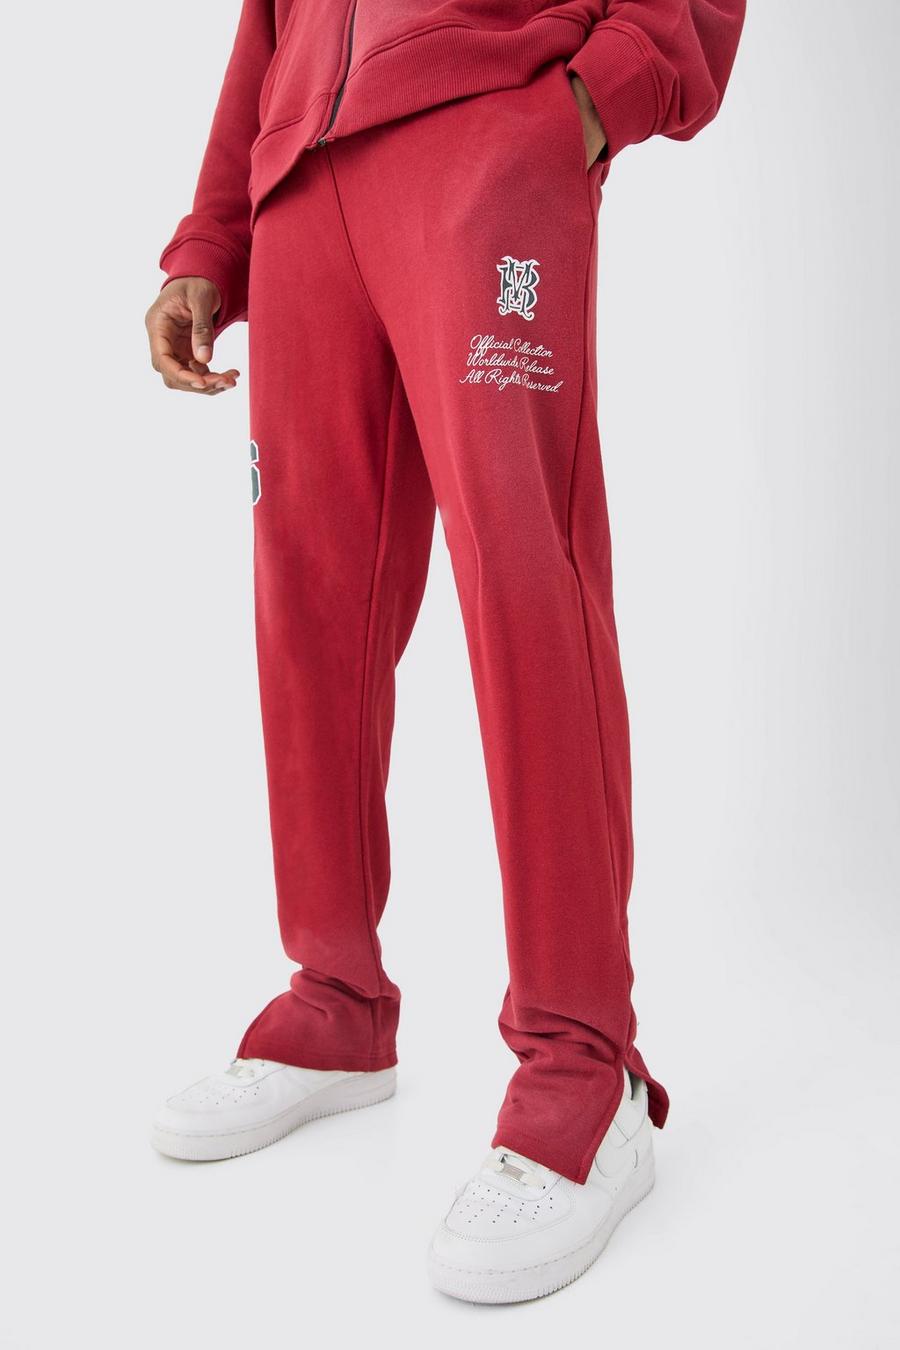 Pantalón deportivo Tall de tela rizo con abertura lateral y lavado a la piedra, Red